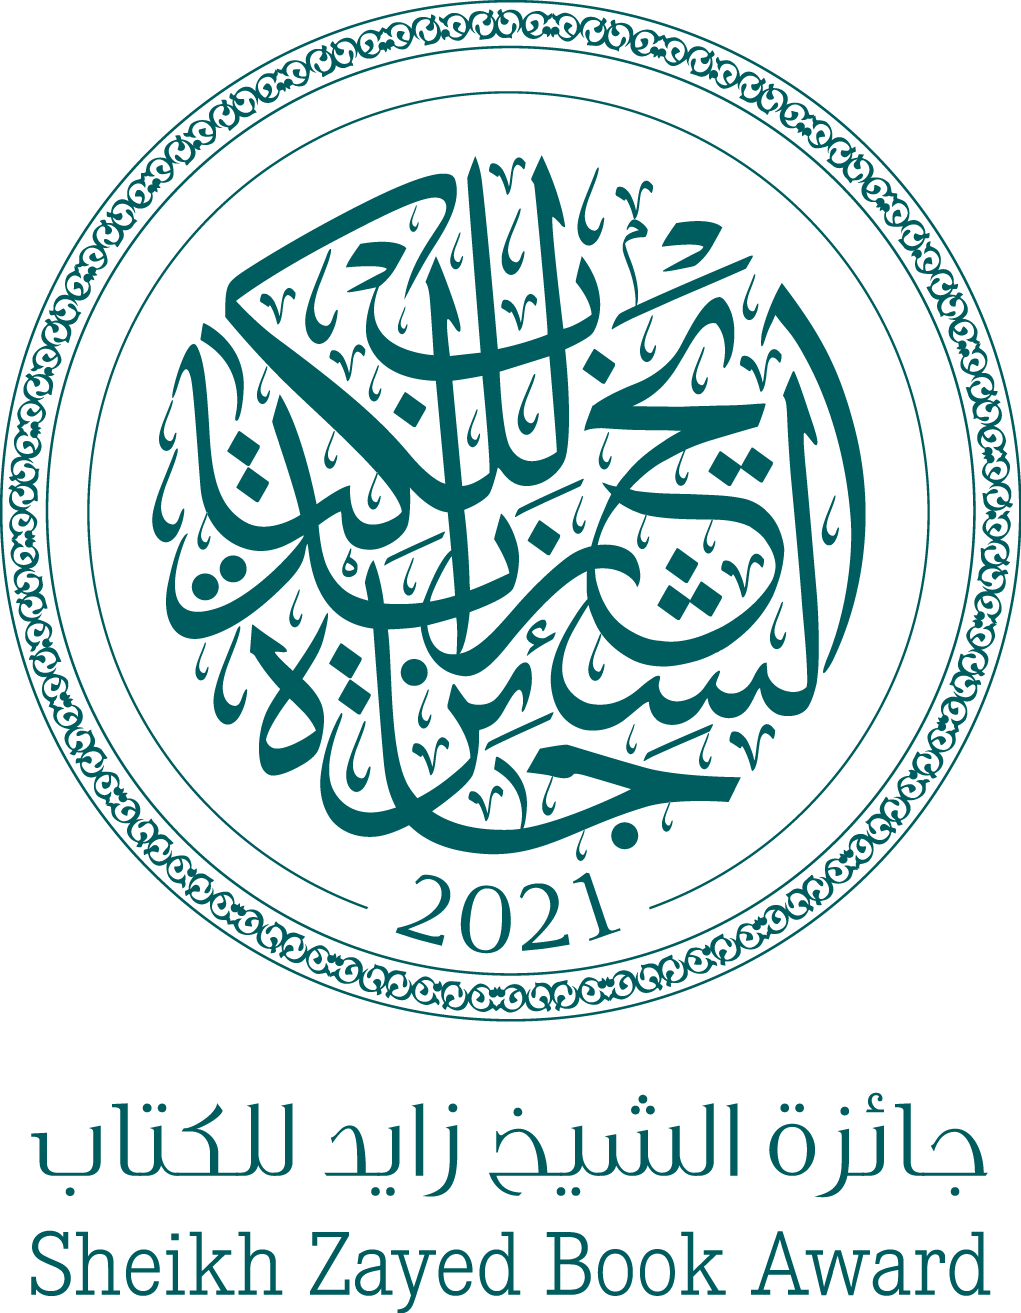 Sheikh zayed book award